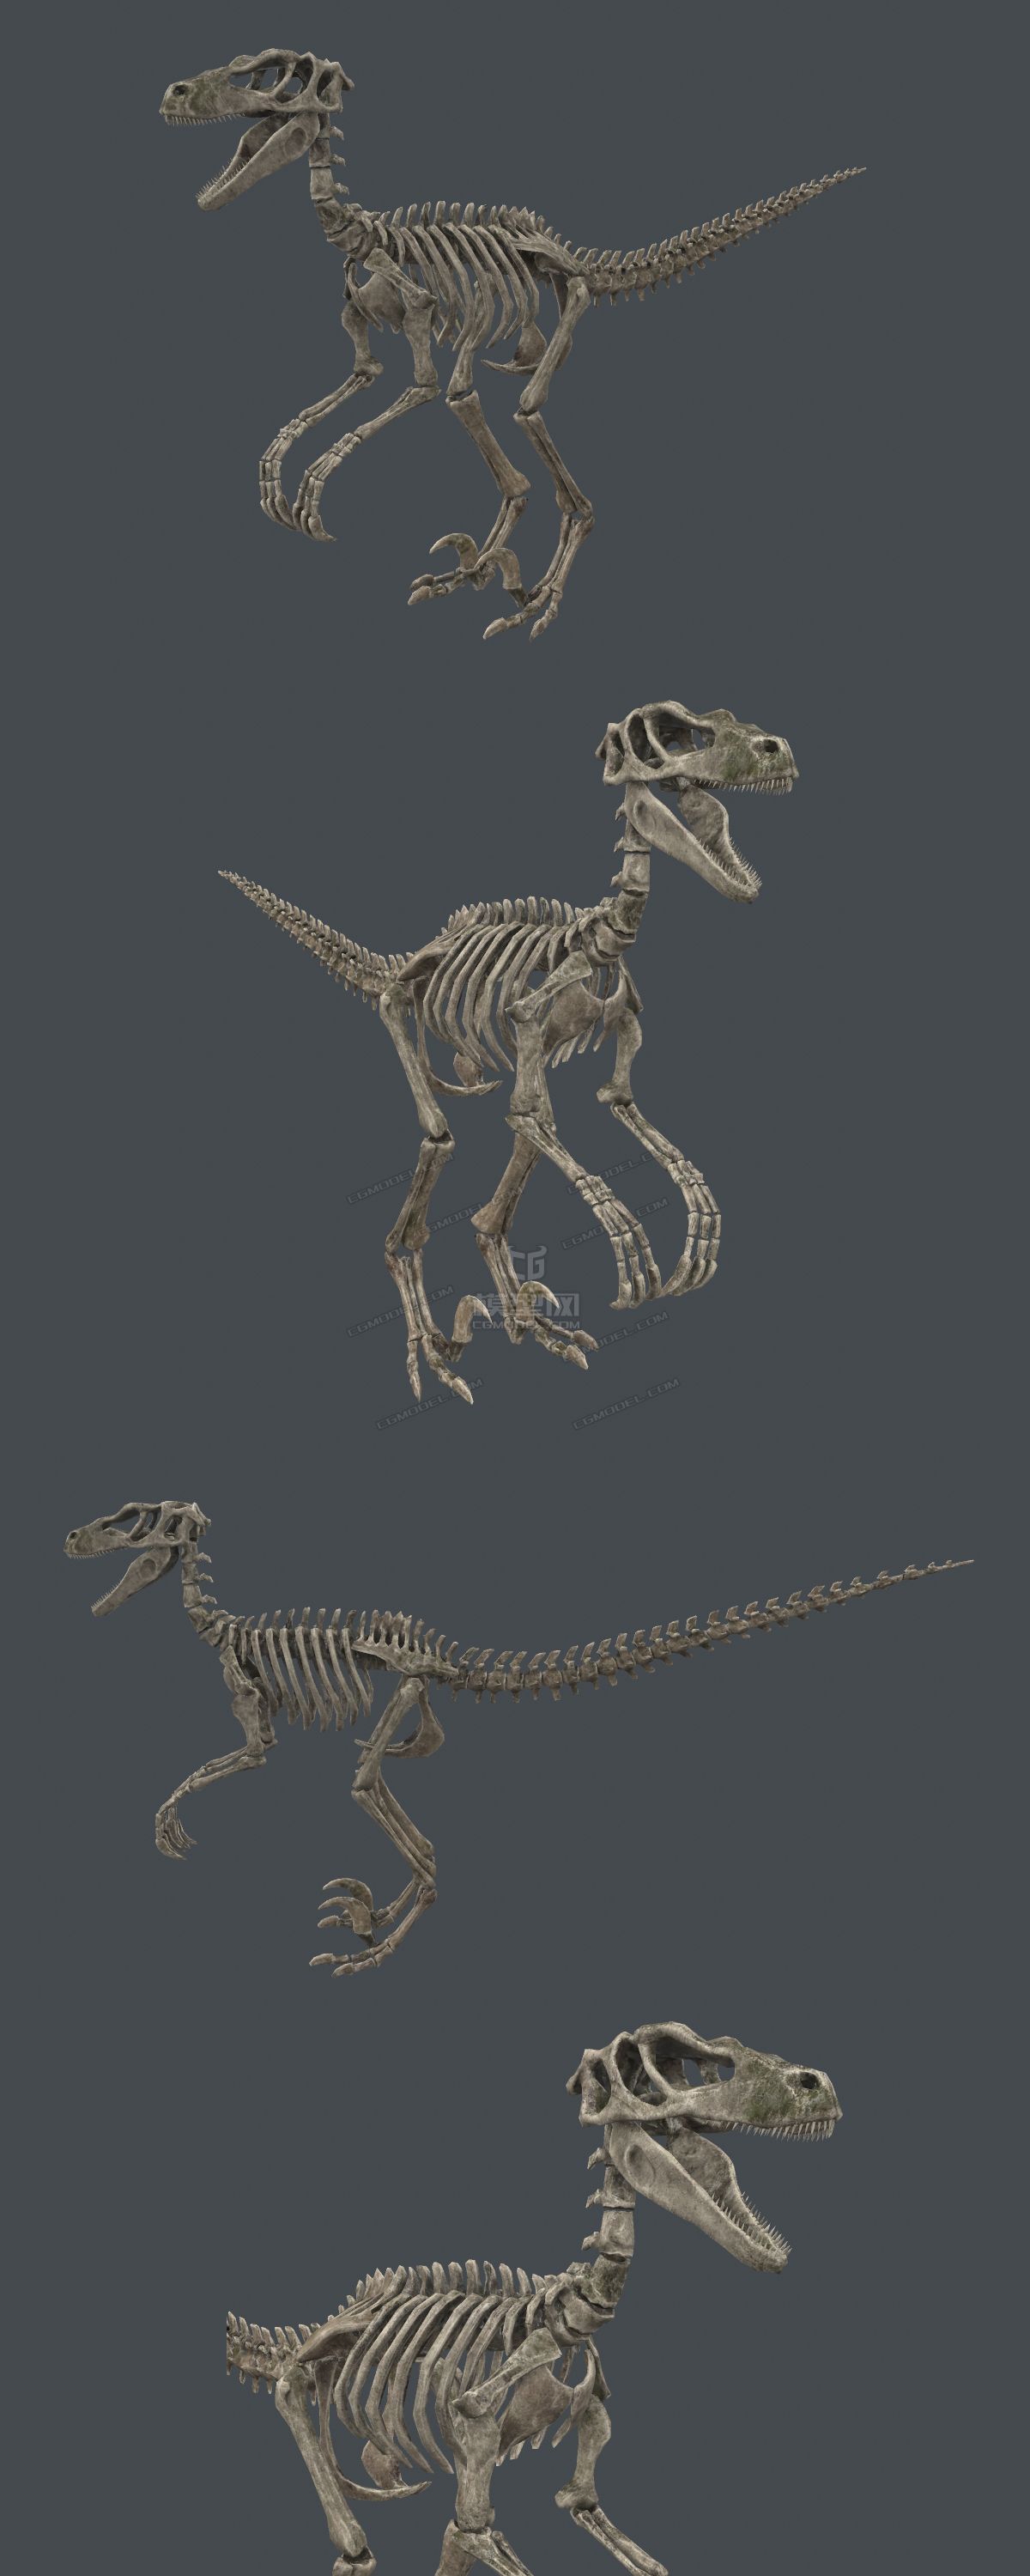 六种恐龙化石骨架合集!雷龙暴龙迅猛龙三角龙剑龙特异龙骨骼标本模型